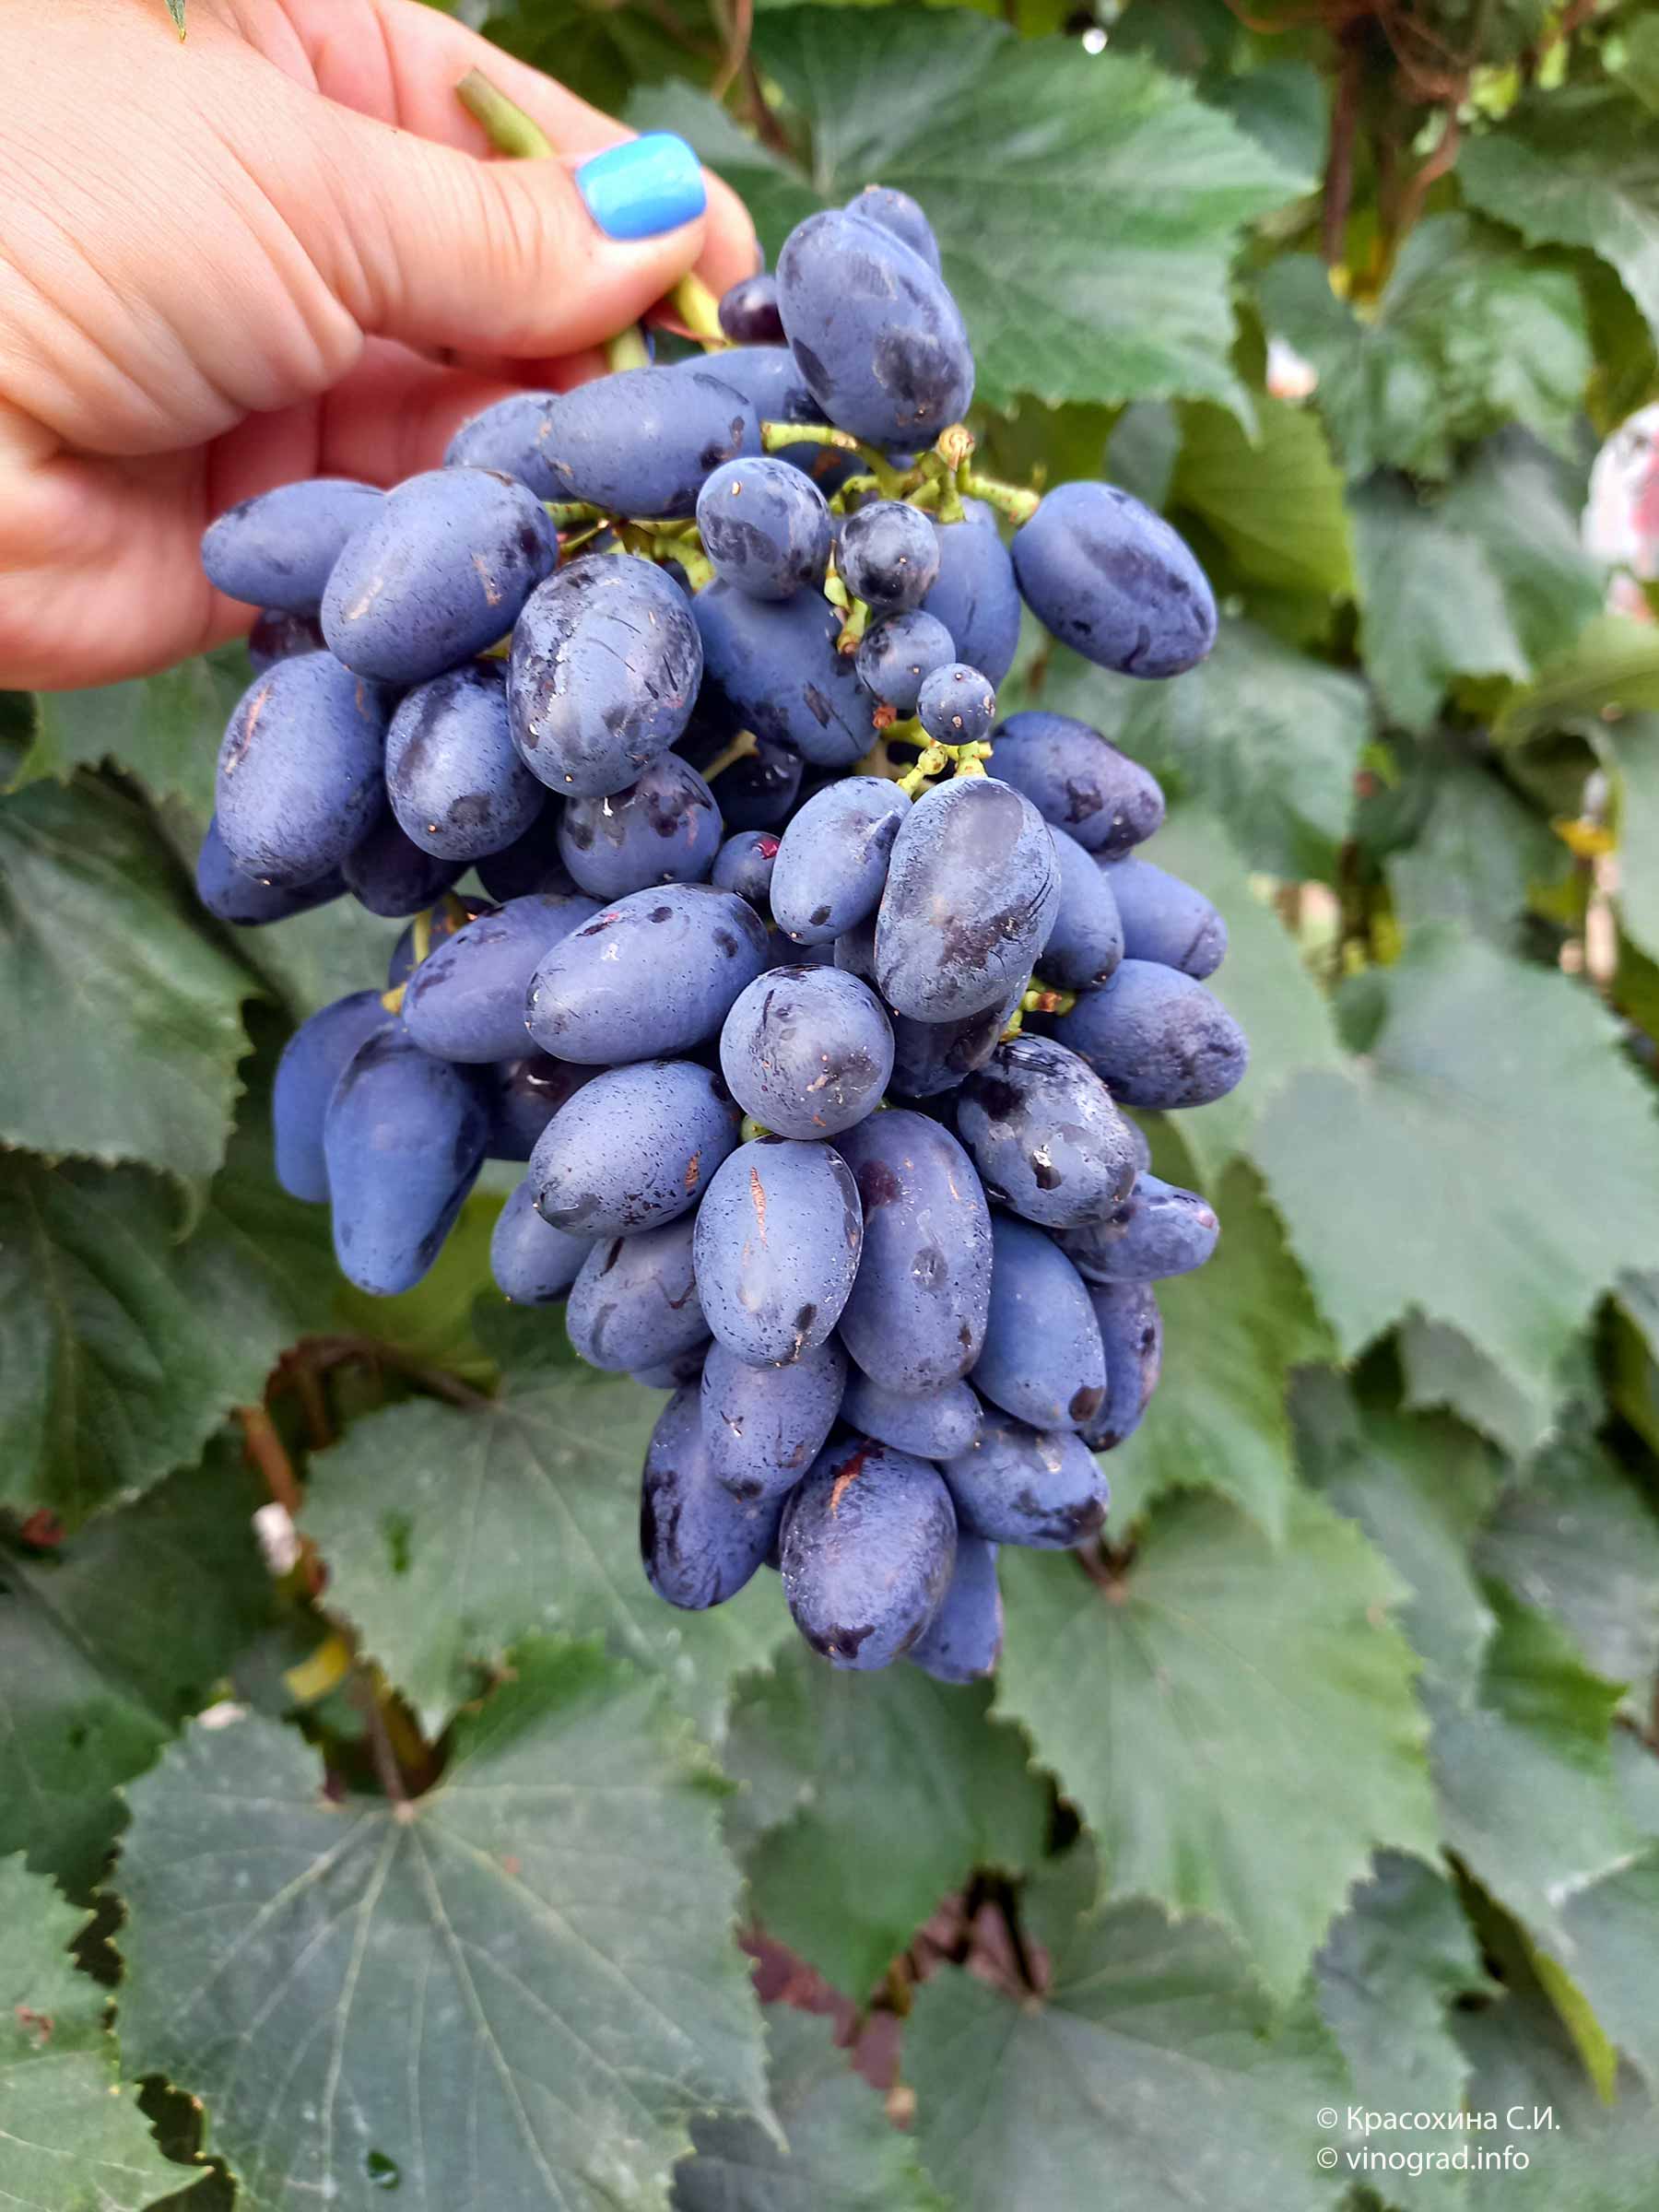 Виноград ромбик: описание сорта, правила посадки и выращивания виноград ромбик